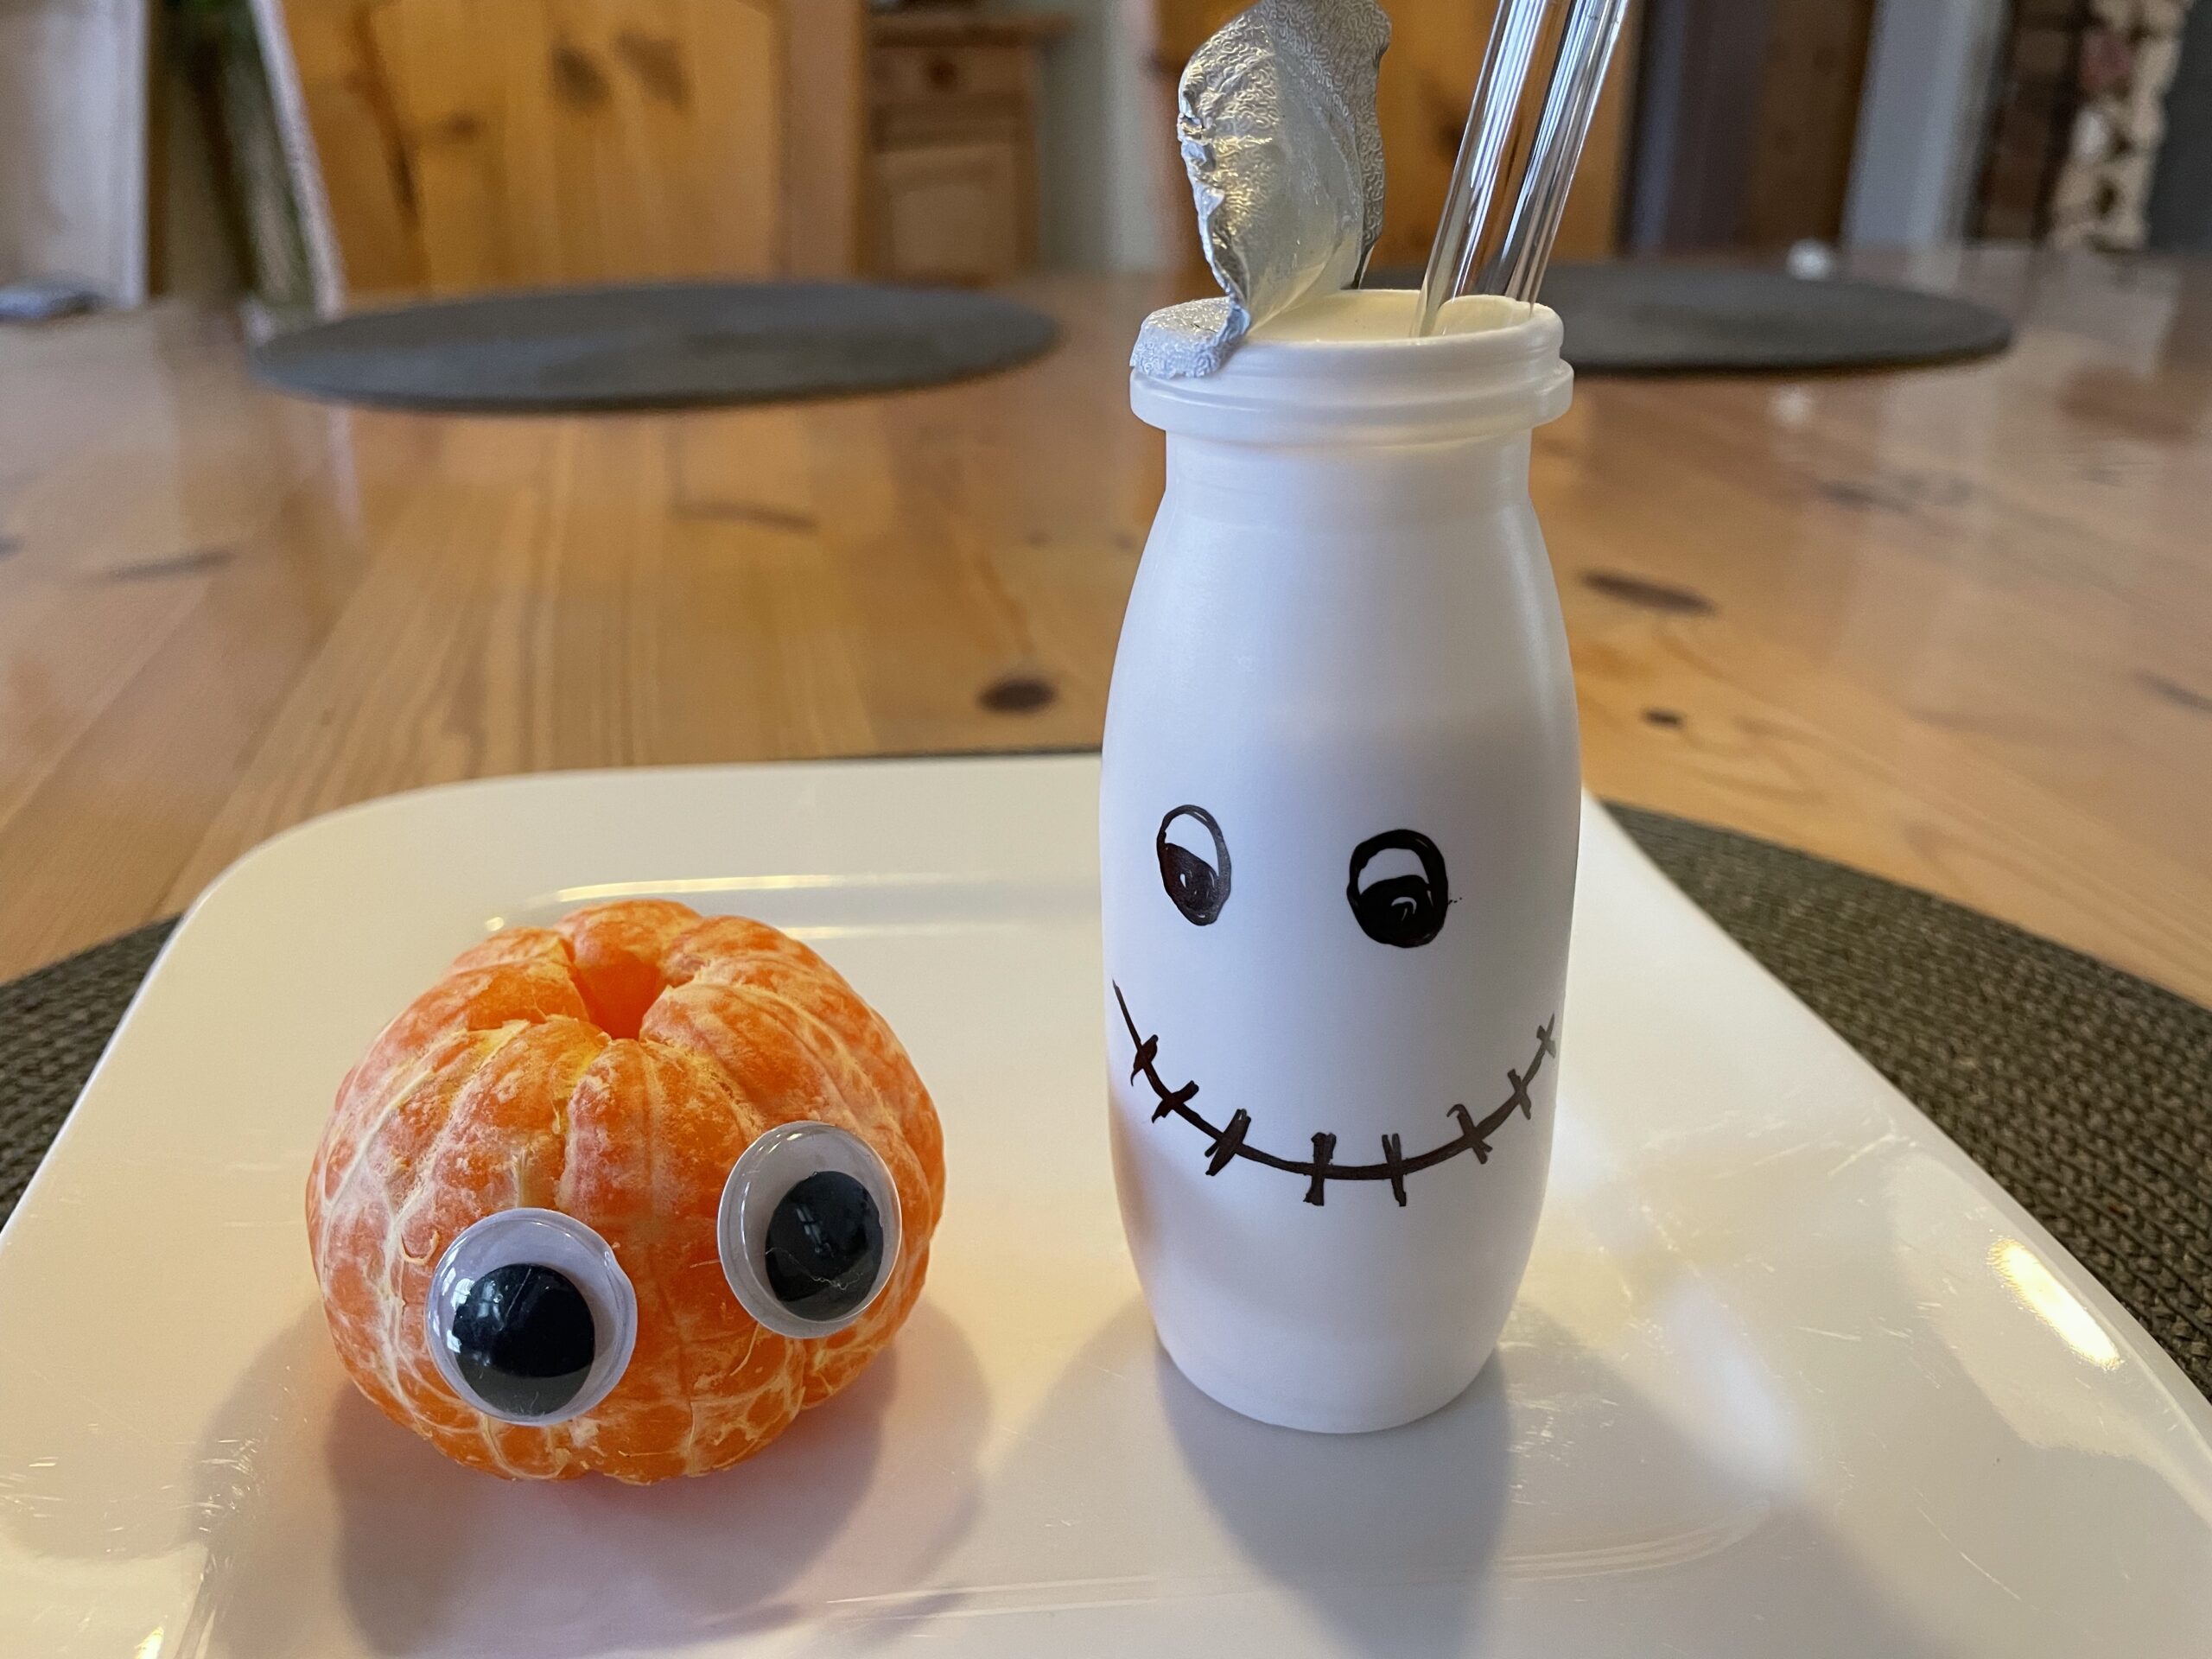 Bild zum Schritt 13 für das Bastel- und DIY-Abenteuer für Kinder: 'Legt die Mandarine nun mit dem Trinkjoghurt zusammen auf einen...'